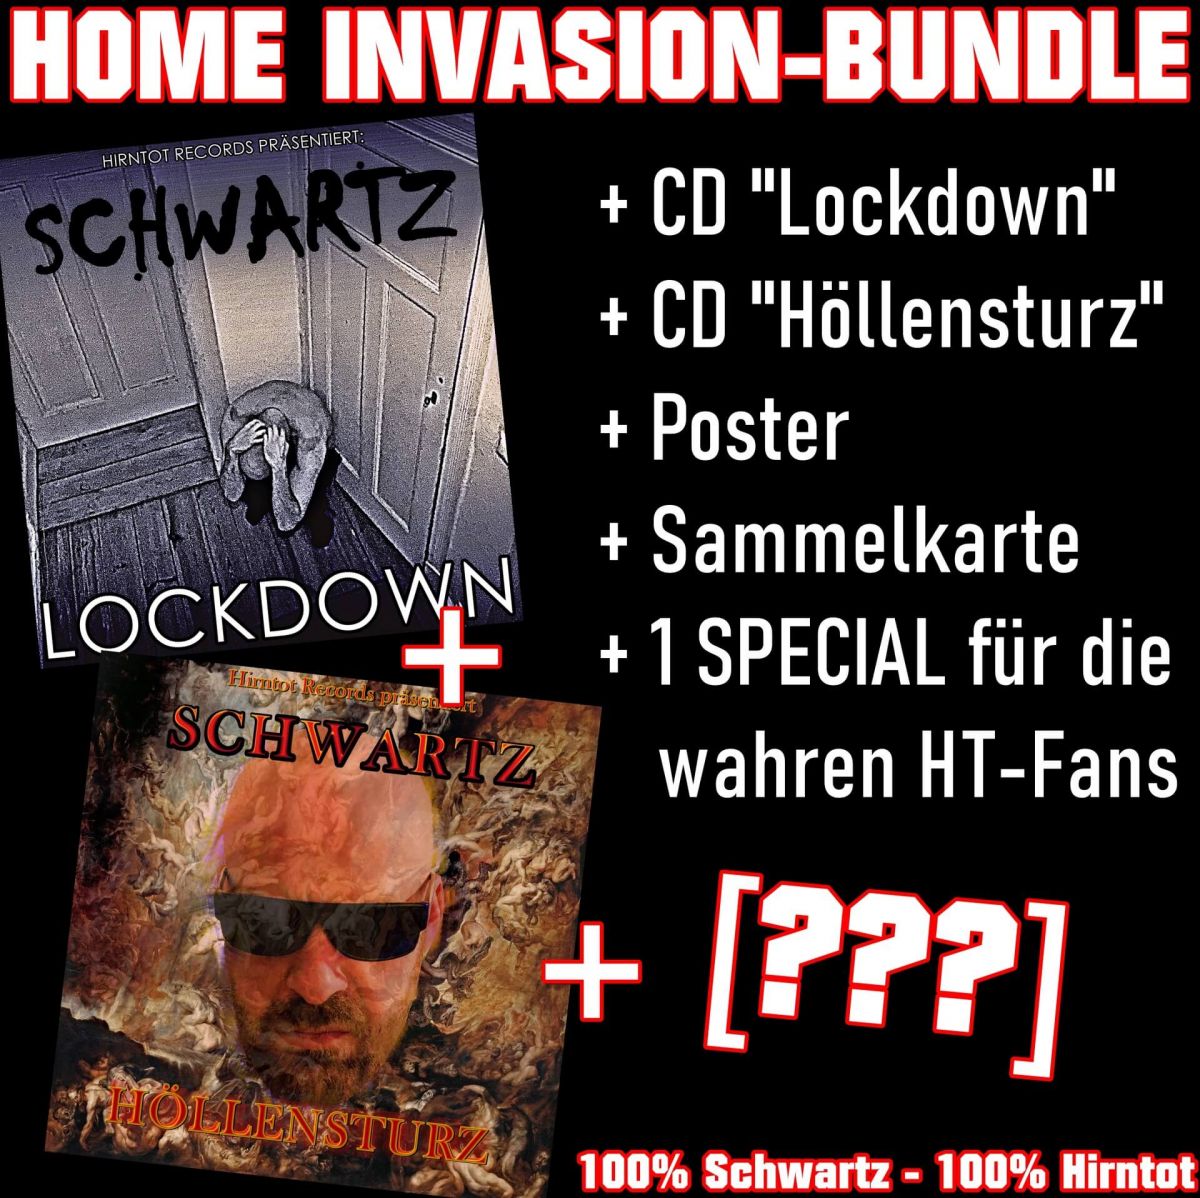 Ankündigung zum Home Invasion Bundle mit Auflistung der beiden CDs und der Goodies